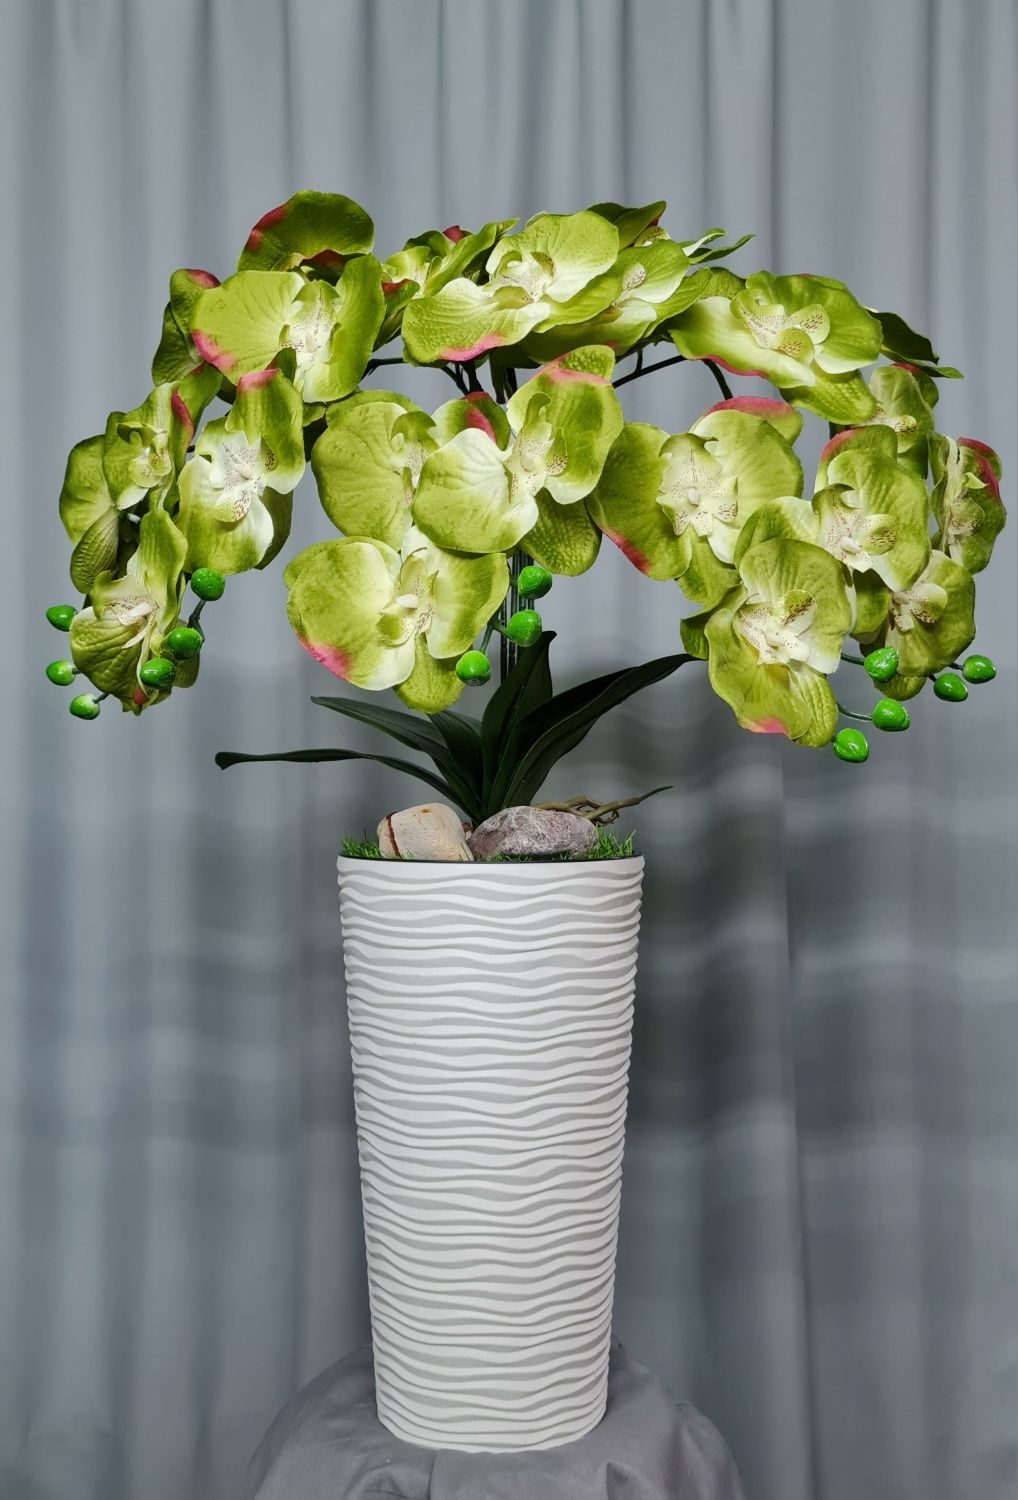 Орхідея домініка, метелик - штучна з латексу, тканини - продам